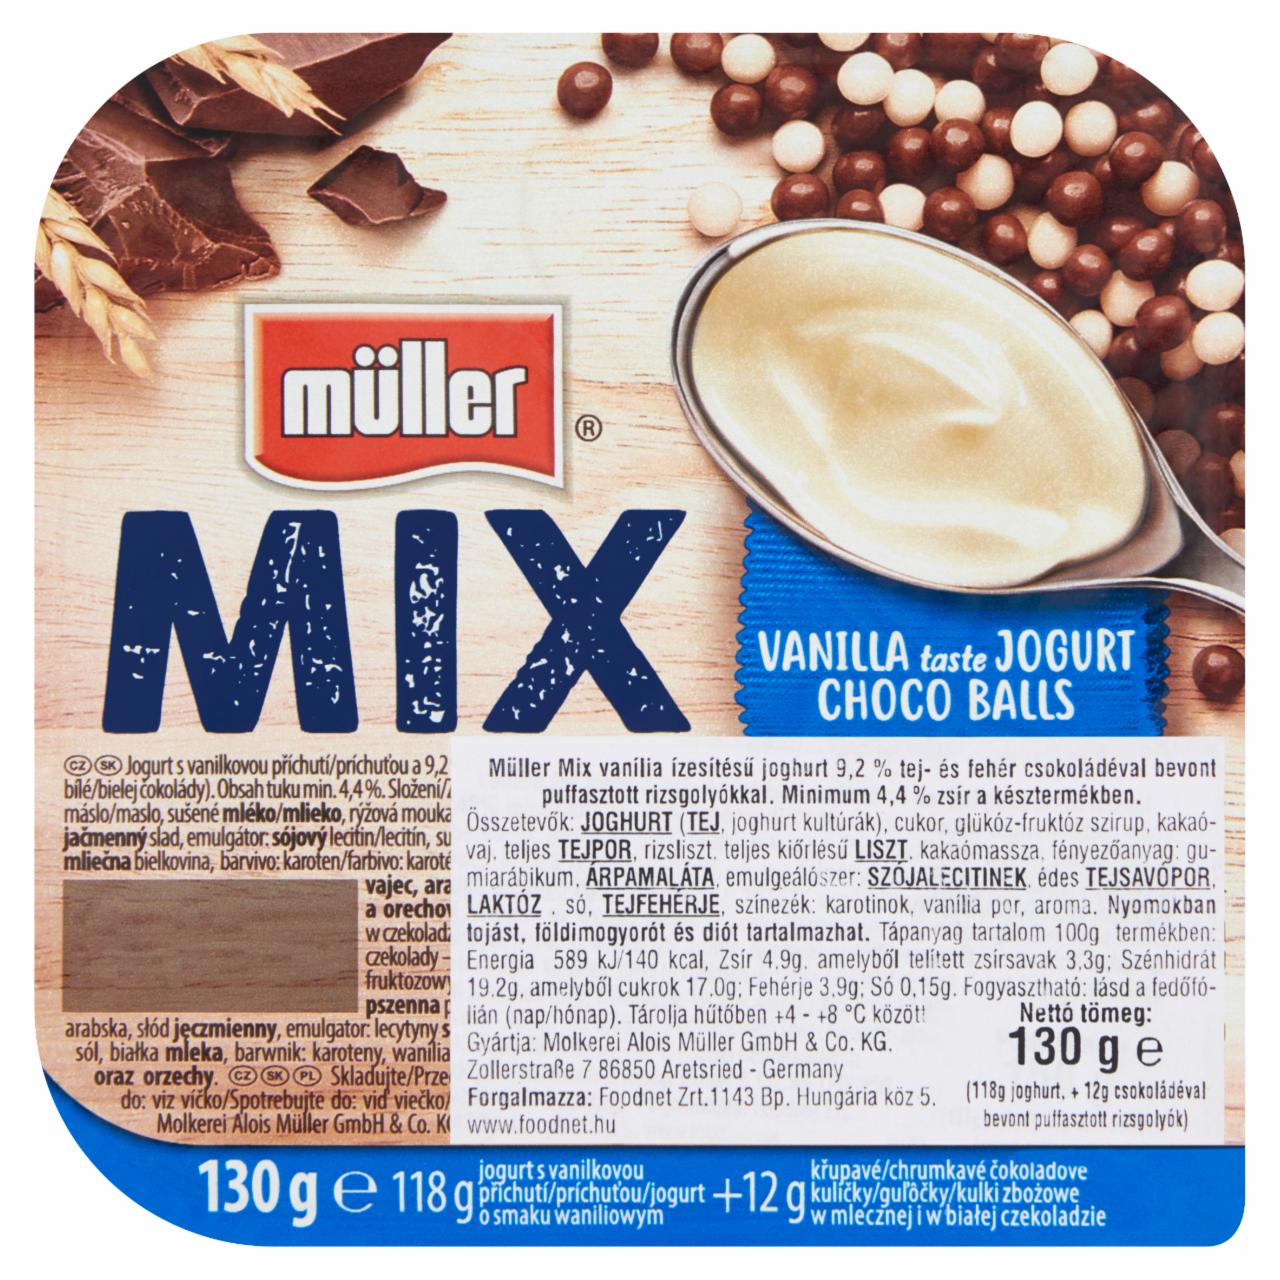 Képek - Müller Mix vanília ízesítésű joghurt csokoládéval bevont puffasztott rizsgolyókkal 130 g